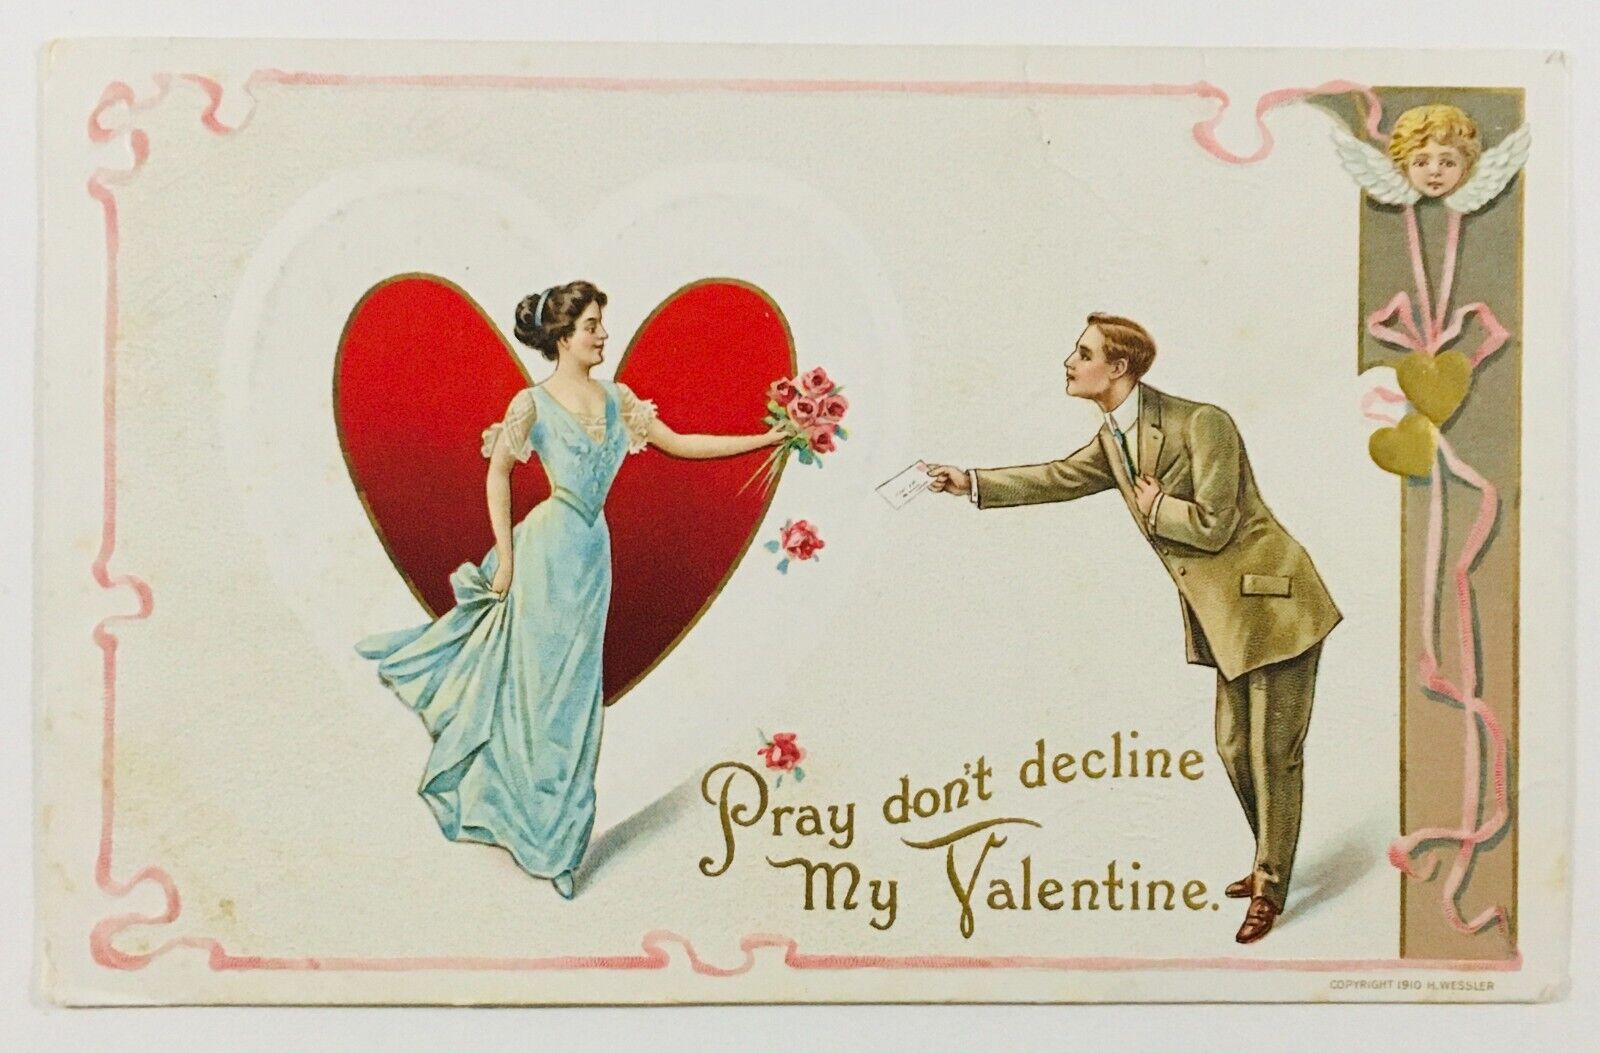 Vintage Valentine Postcard Pray Don\'t Decline PM 1911